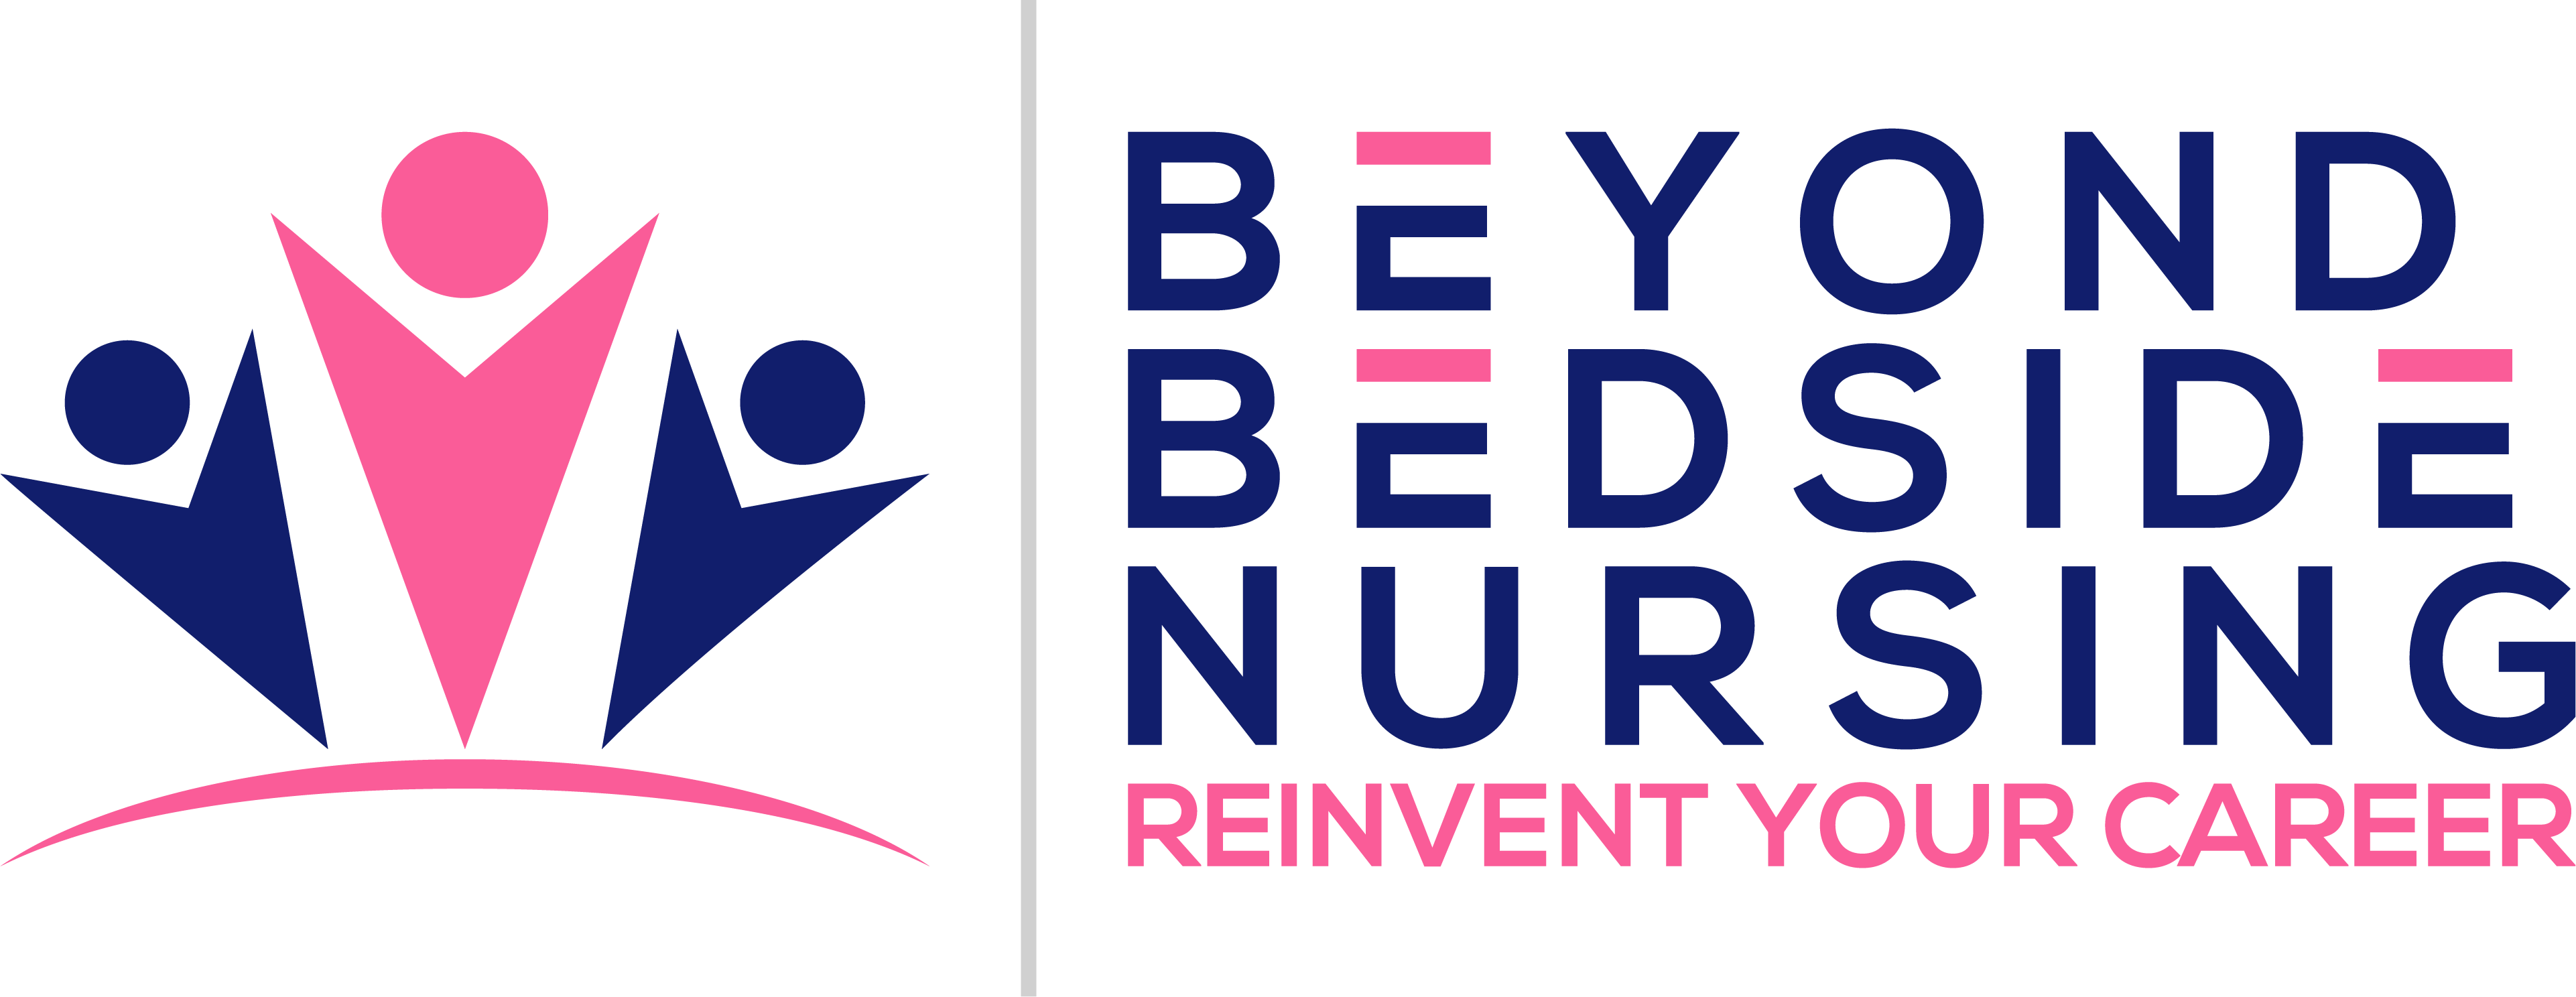 Beyond Bedside Nursing